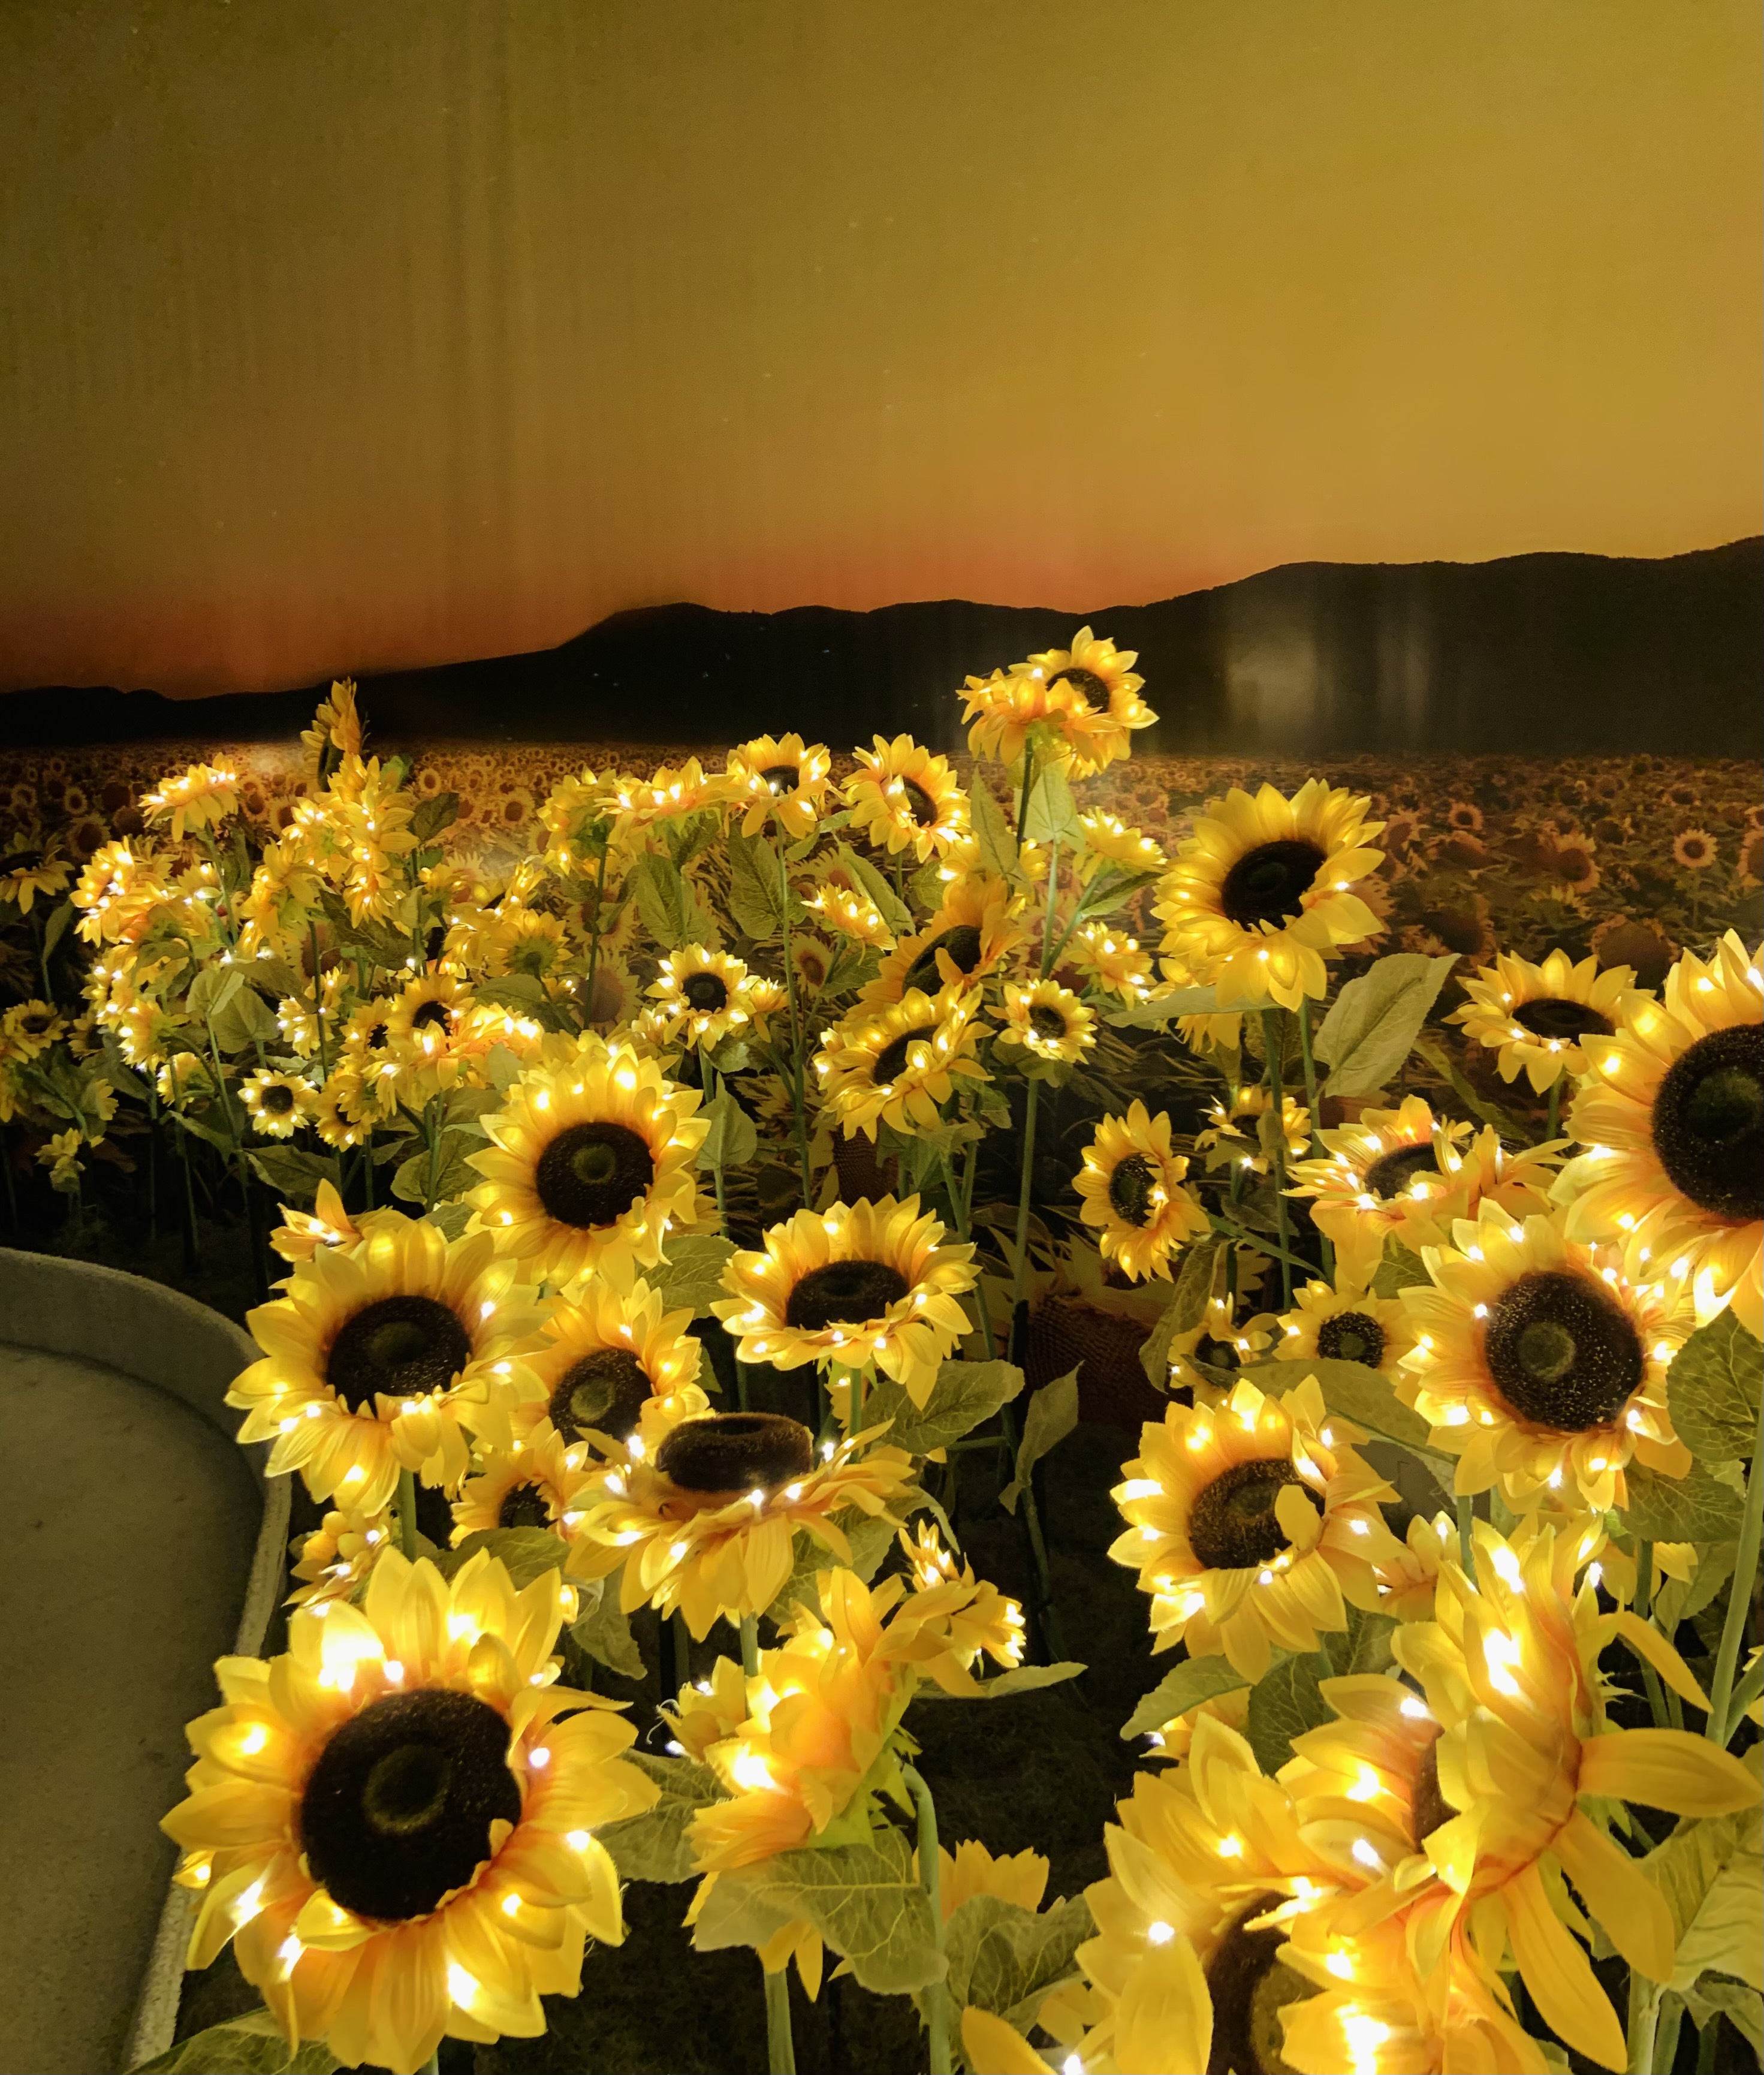 Foto dos girassóis iluminados com luzes nas pétalas, na frente de um fundo com uma imagem de um campo de girassóis, a qual passa a sensação de continuidade das flores, e uma montanha no fundo durante um pôr de sol.